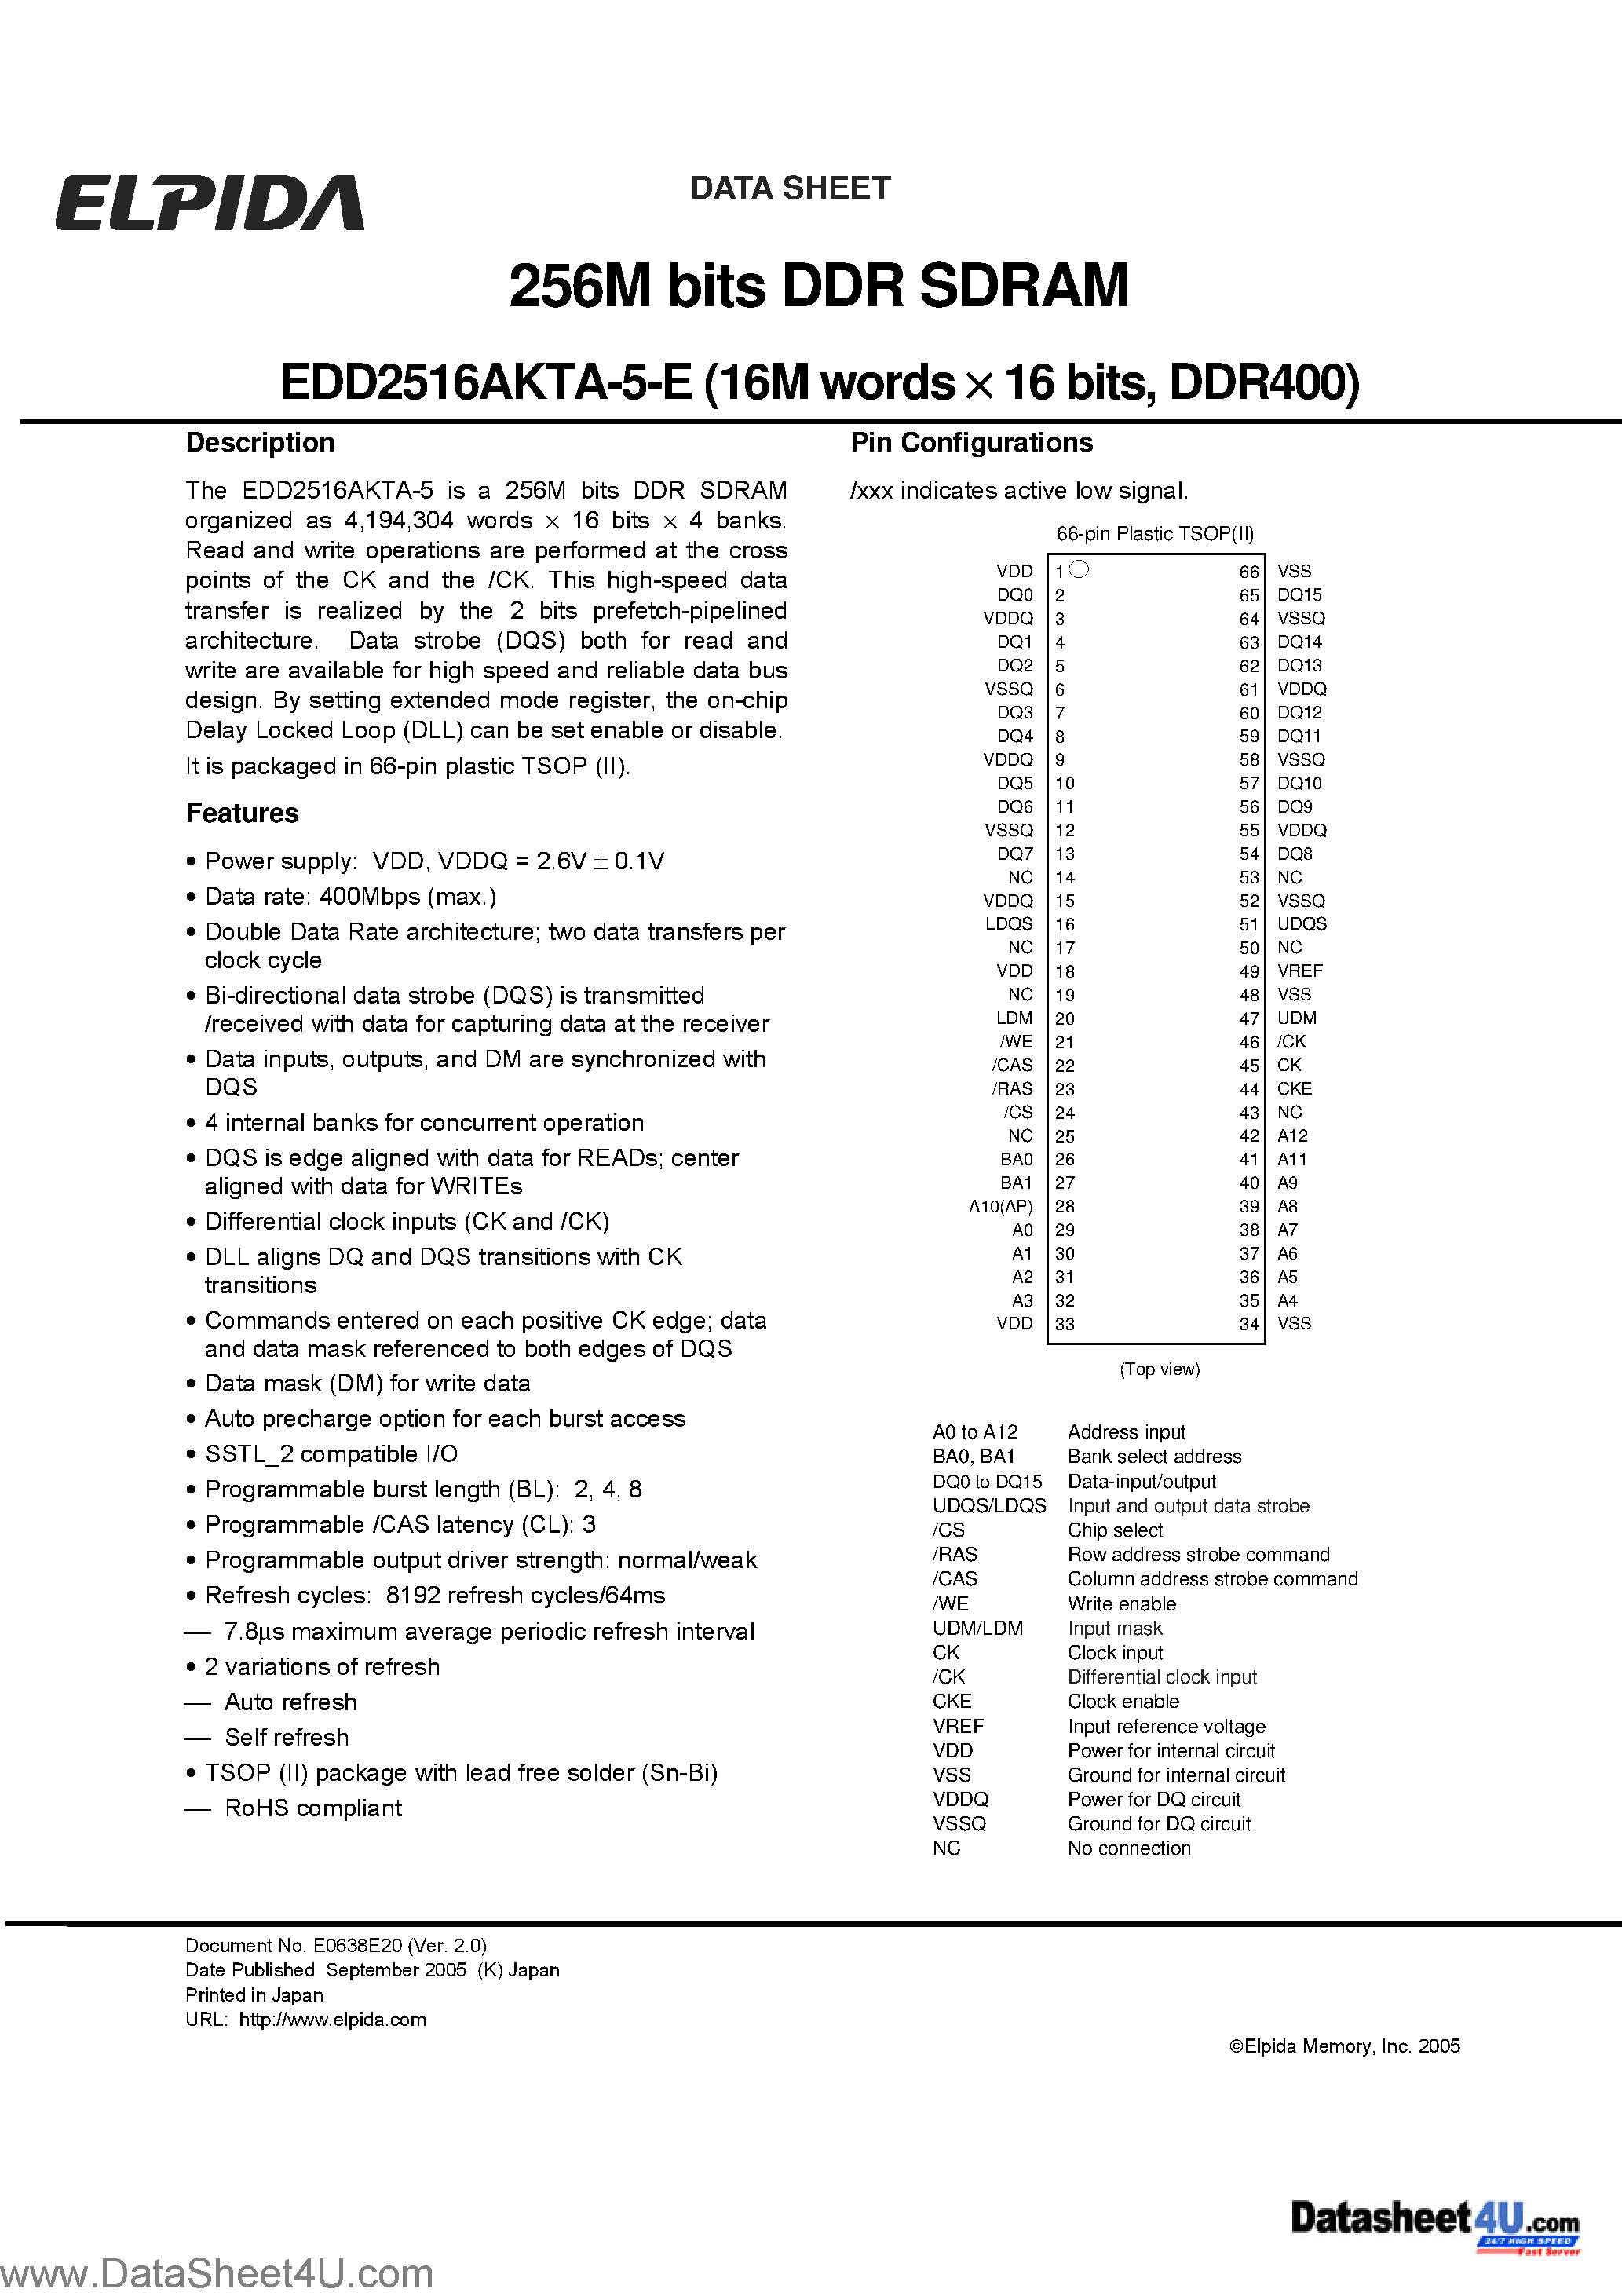 Даташит EDD2516AKTA-5-E - 256M bits DDR SDRAM (16M words x16 bits DDR400) страница 1